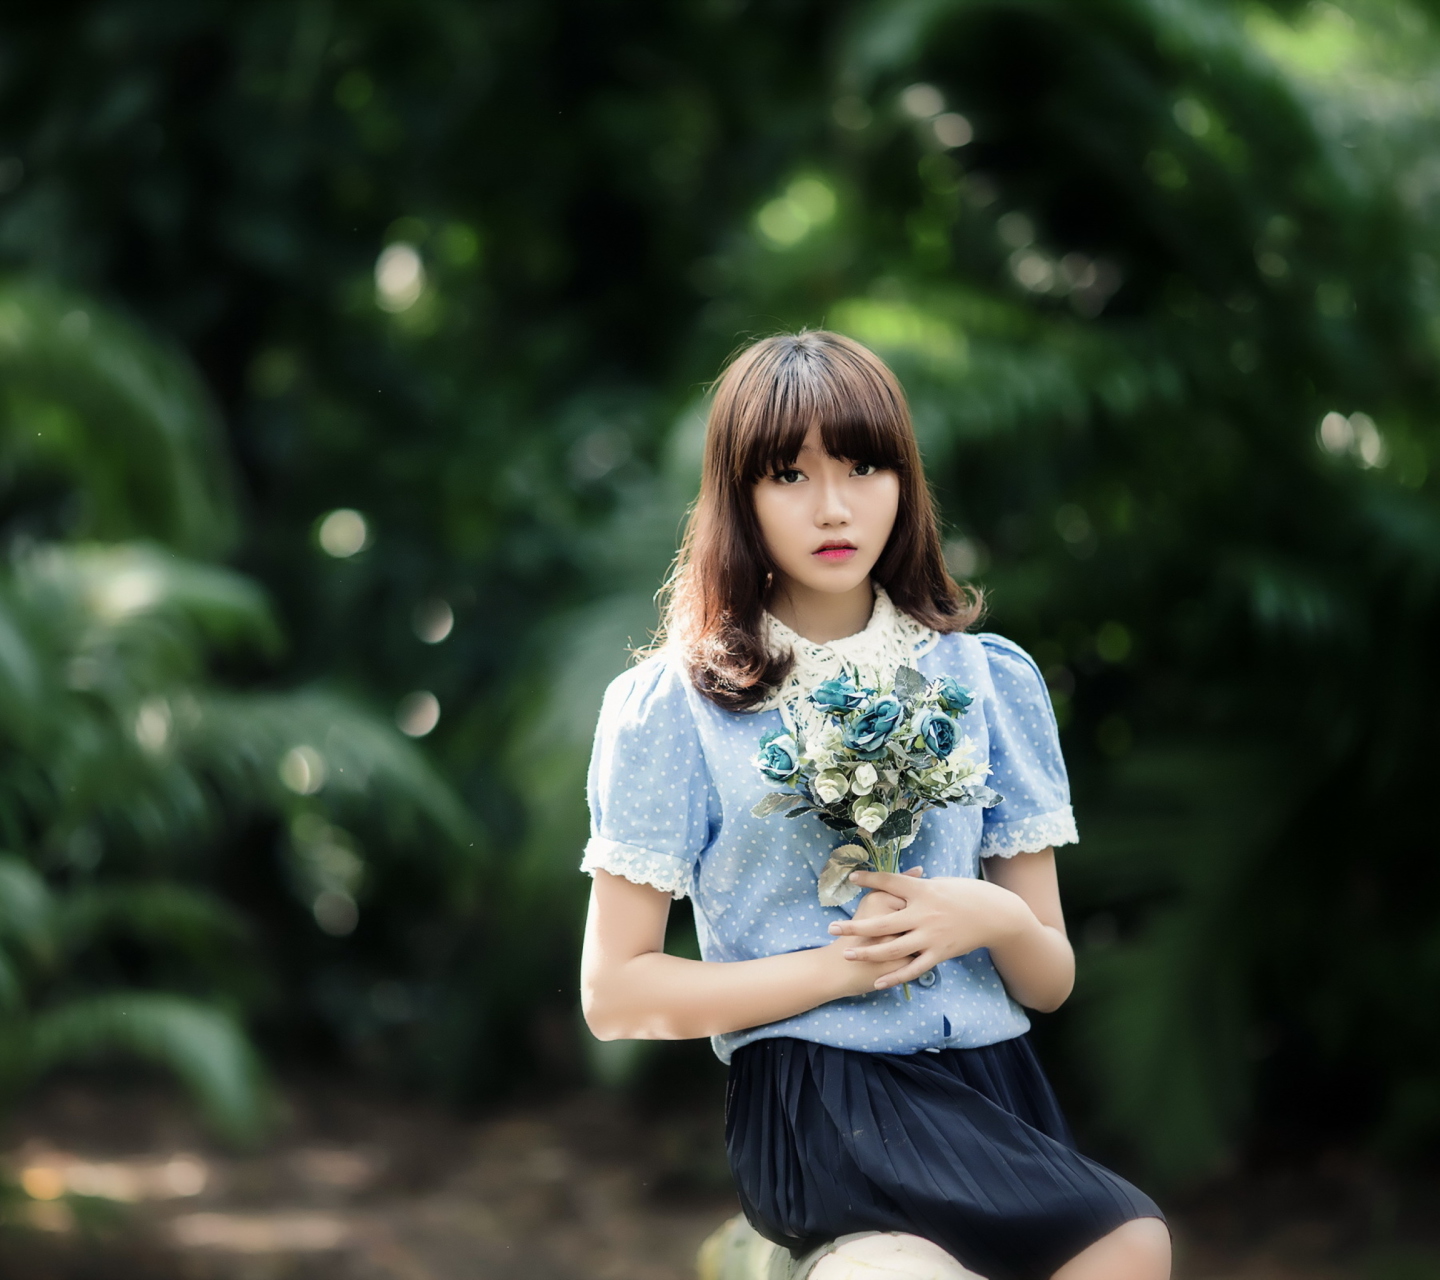 Cute Asian Model With Flower Bouquet screenshot #1 1440x1280